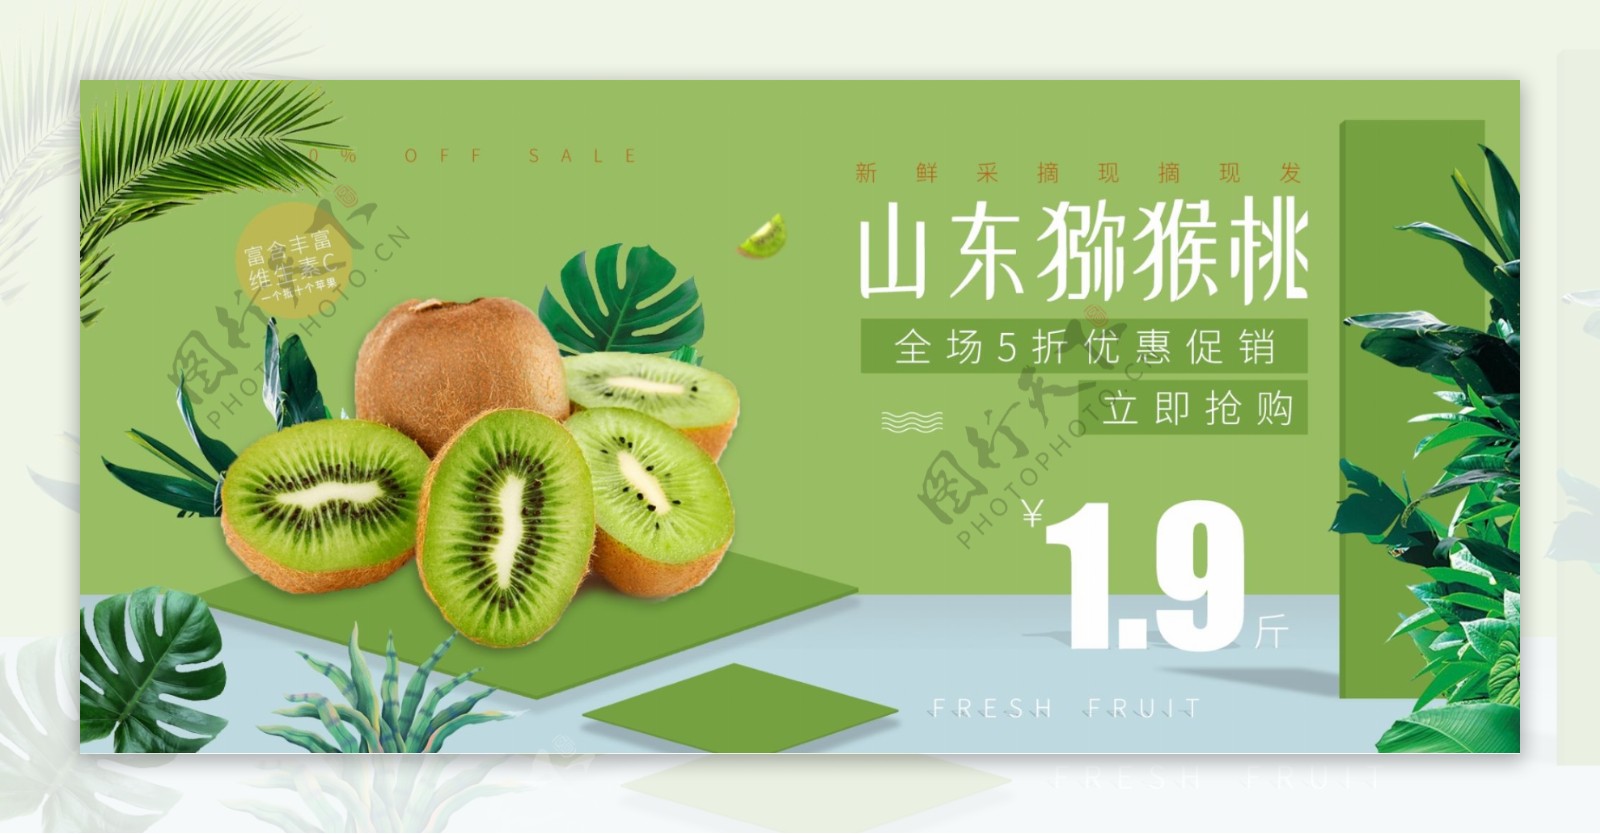 绿色清新猕猴桃超市优惠促销立体空间海报